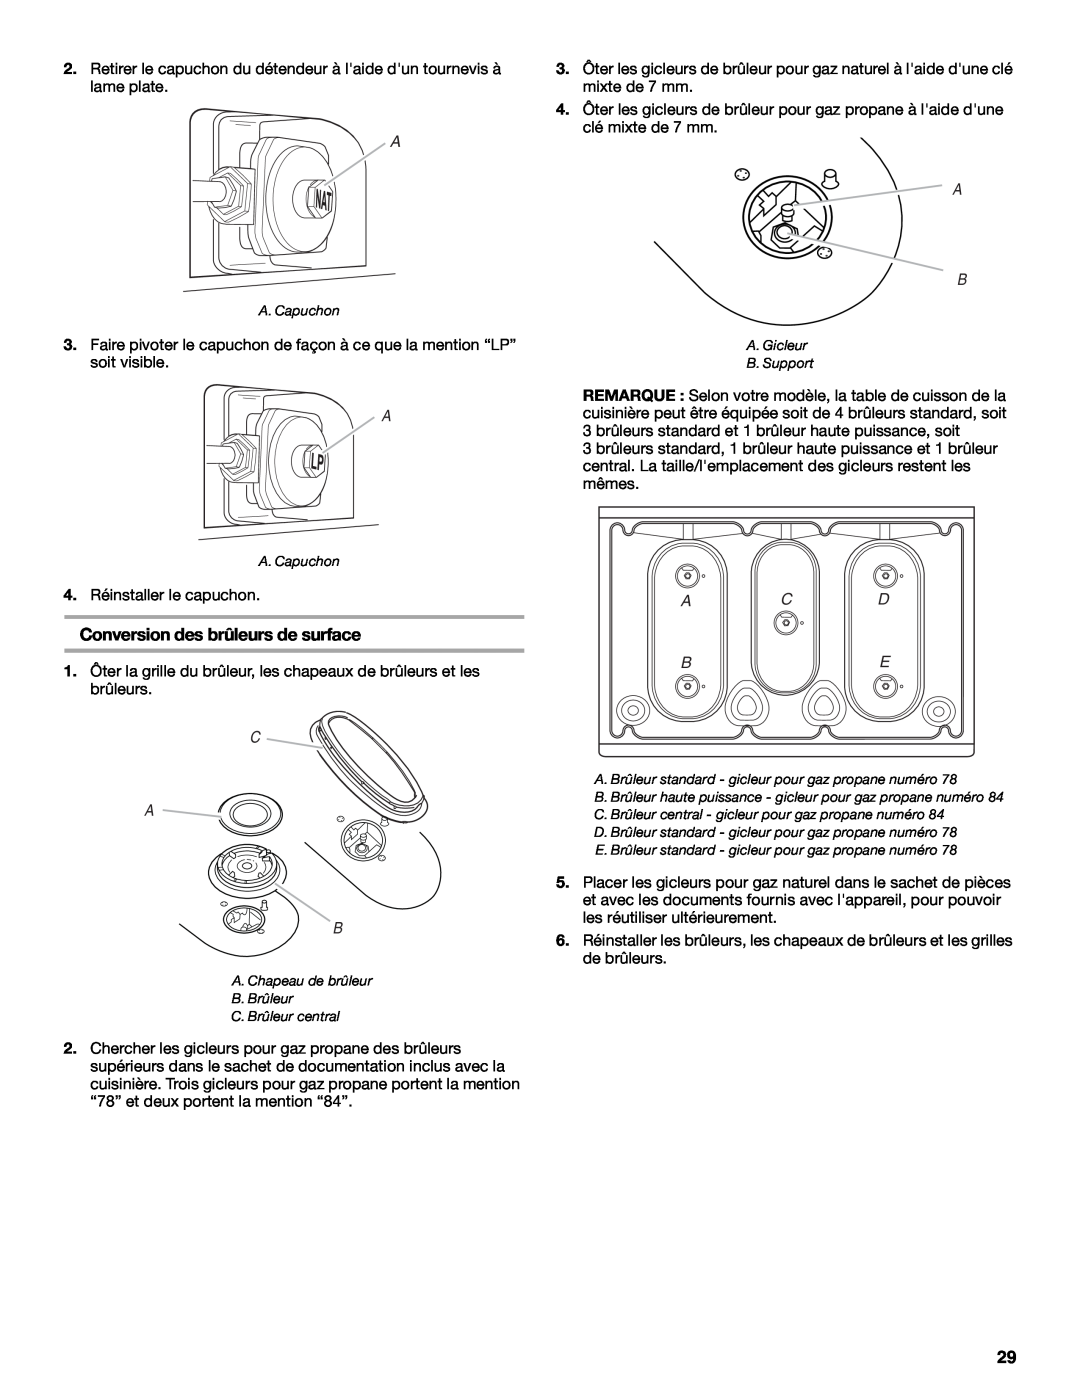 Whirlpool W10200946A installation instructions Conversion des brûleurs de surface, C A B, A C D Be 